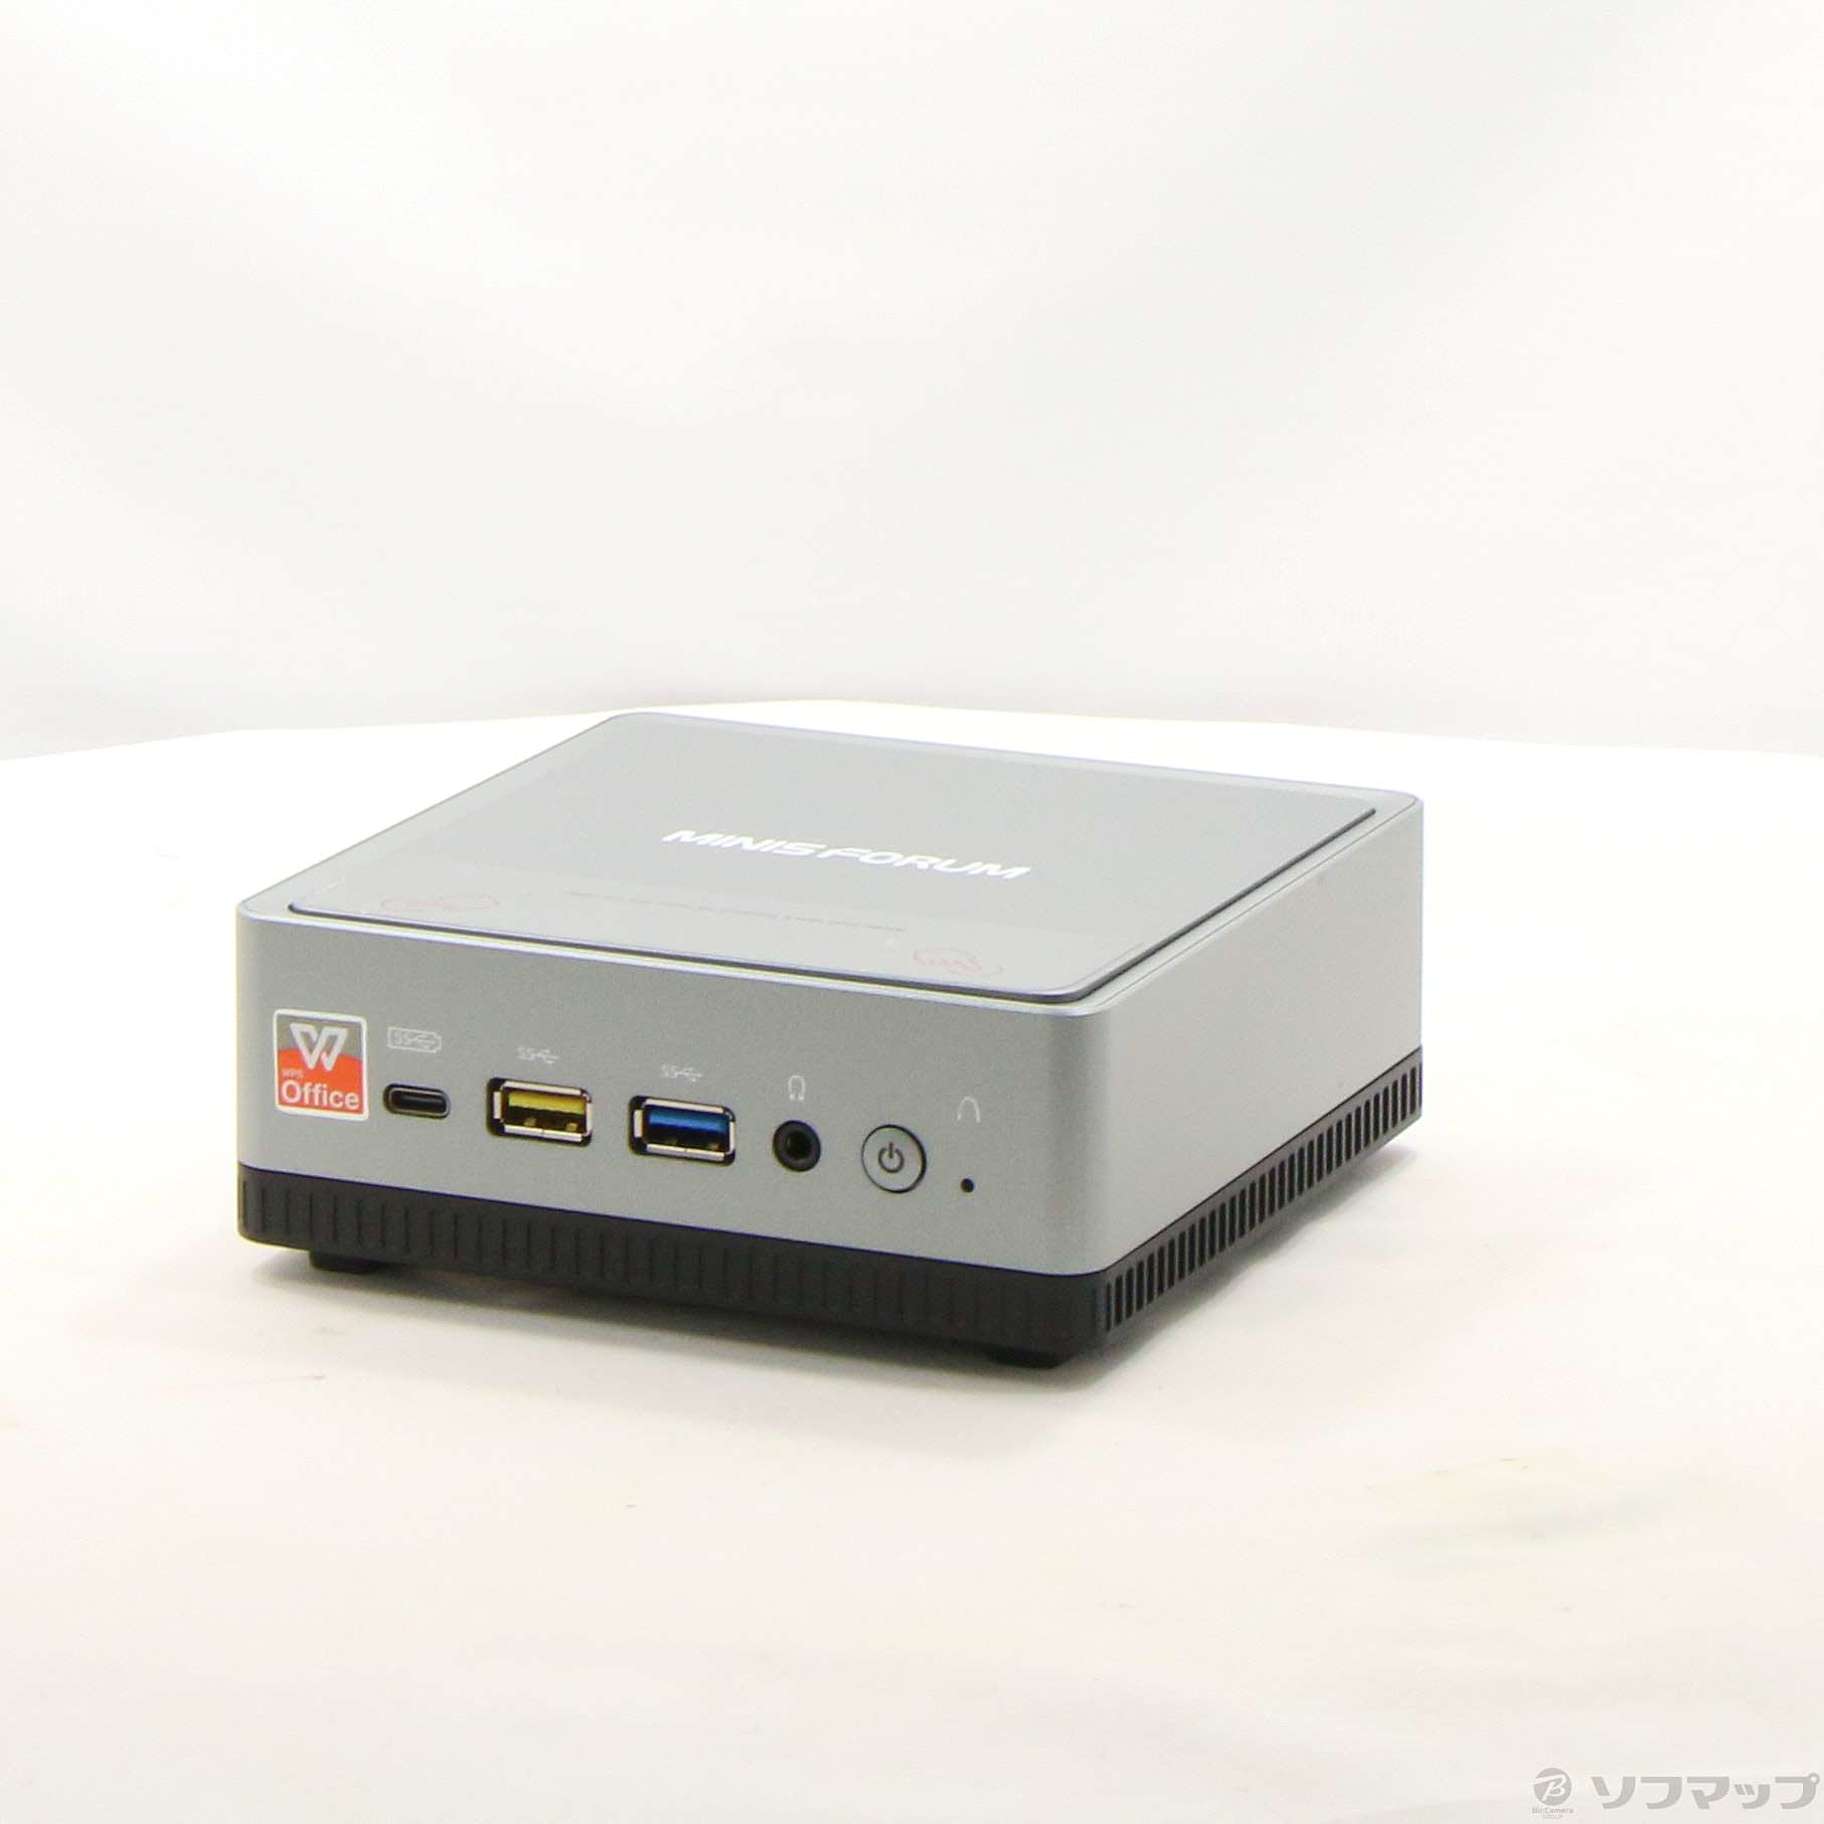 MINISFORUM EliteMini UM350 小型デスクトップPC - デスクトップ型PC